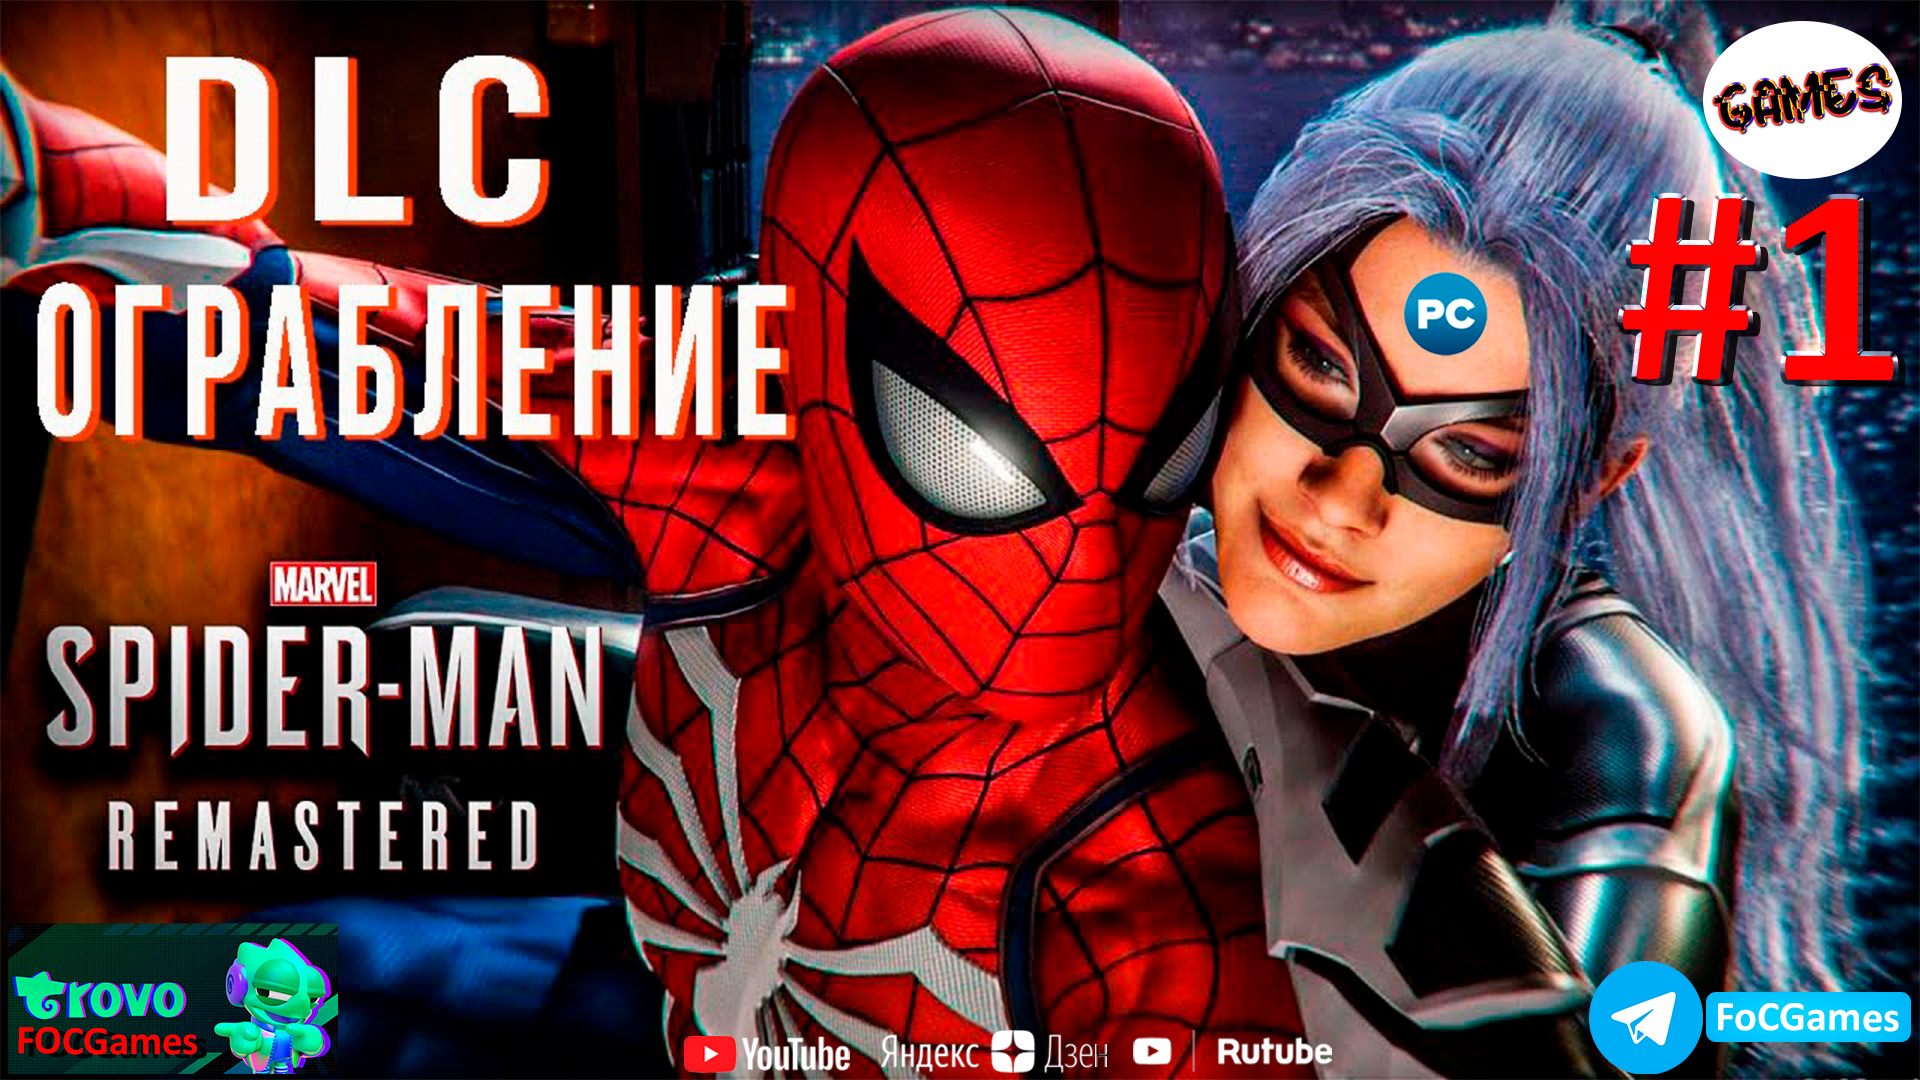 Marvel’s Spider-Man Remastered DLC Ограбление➤СТРИМ➤Человек-Паук 2022➤ПК ➤Геймплей➤FoC Games.mp4